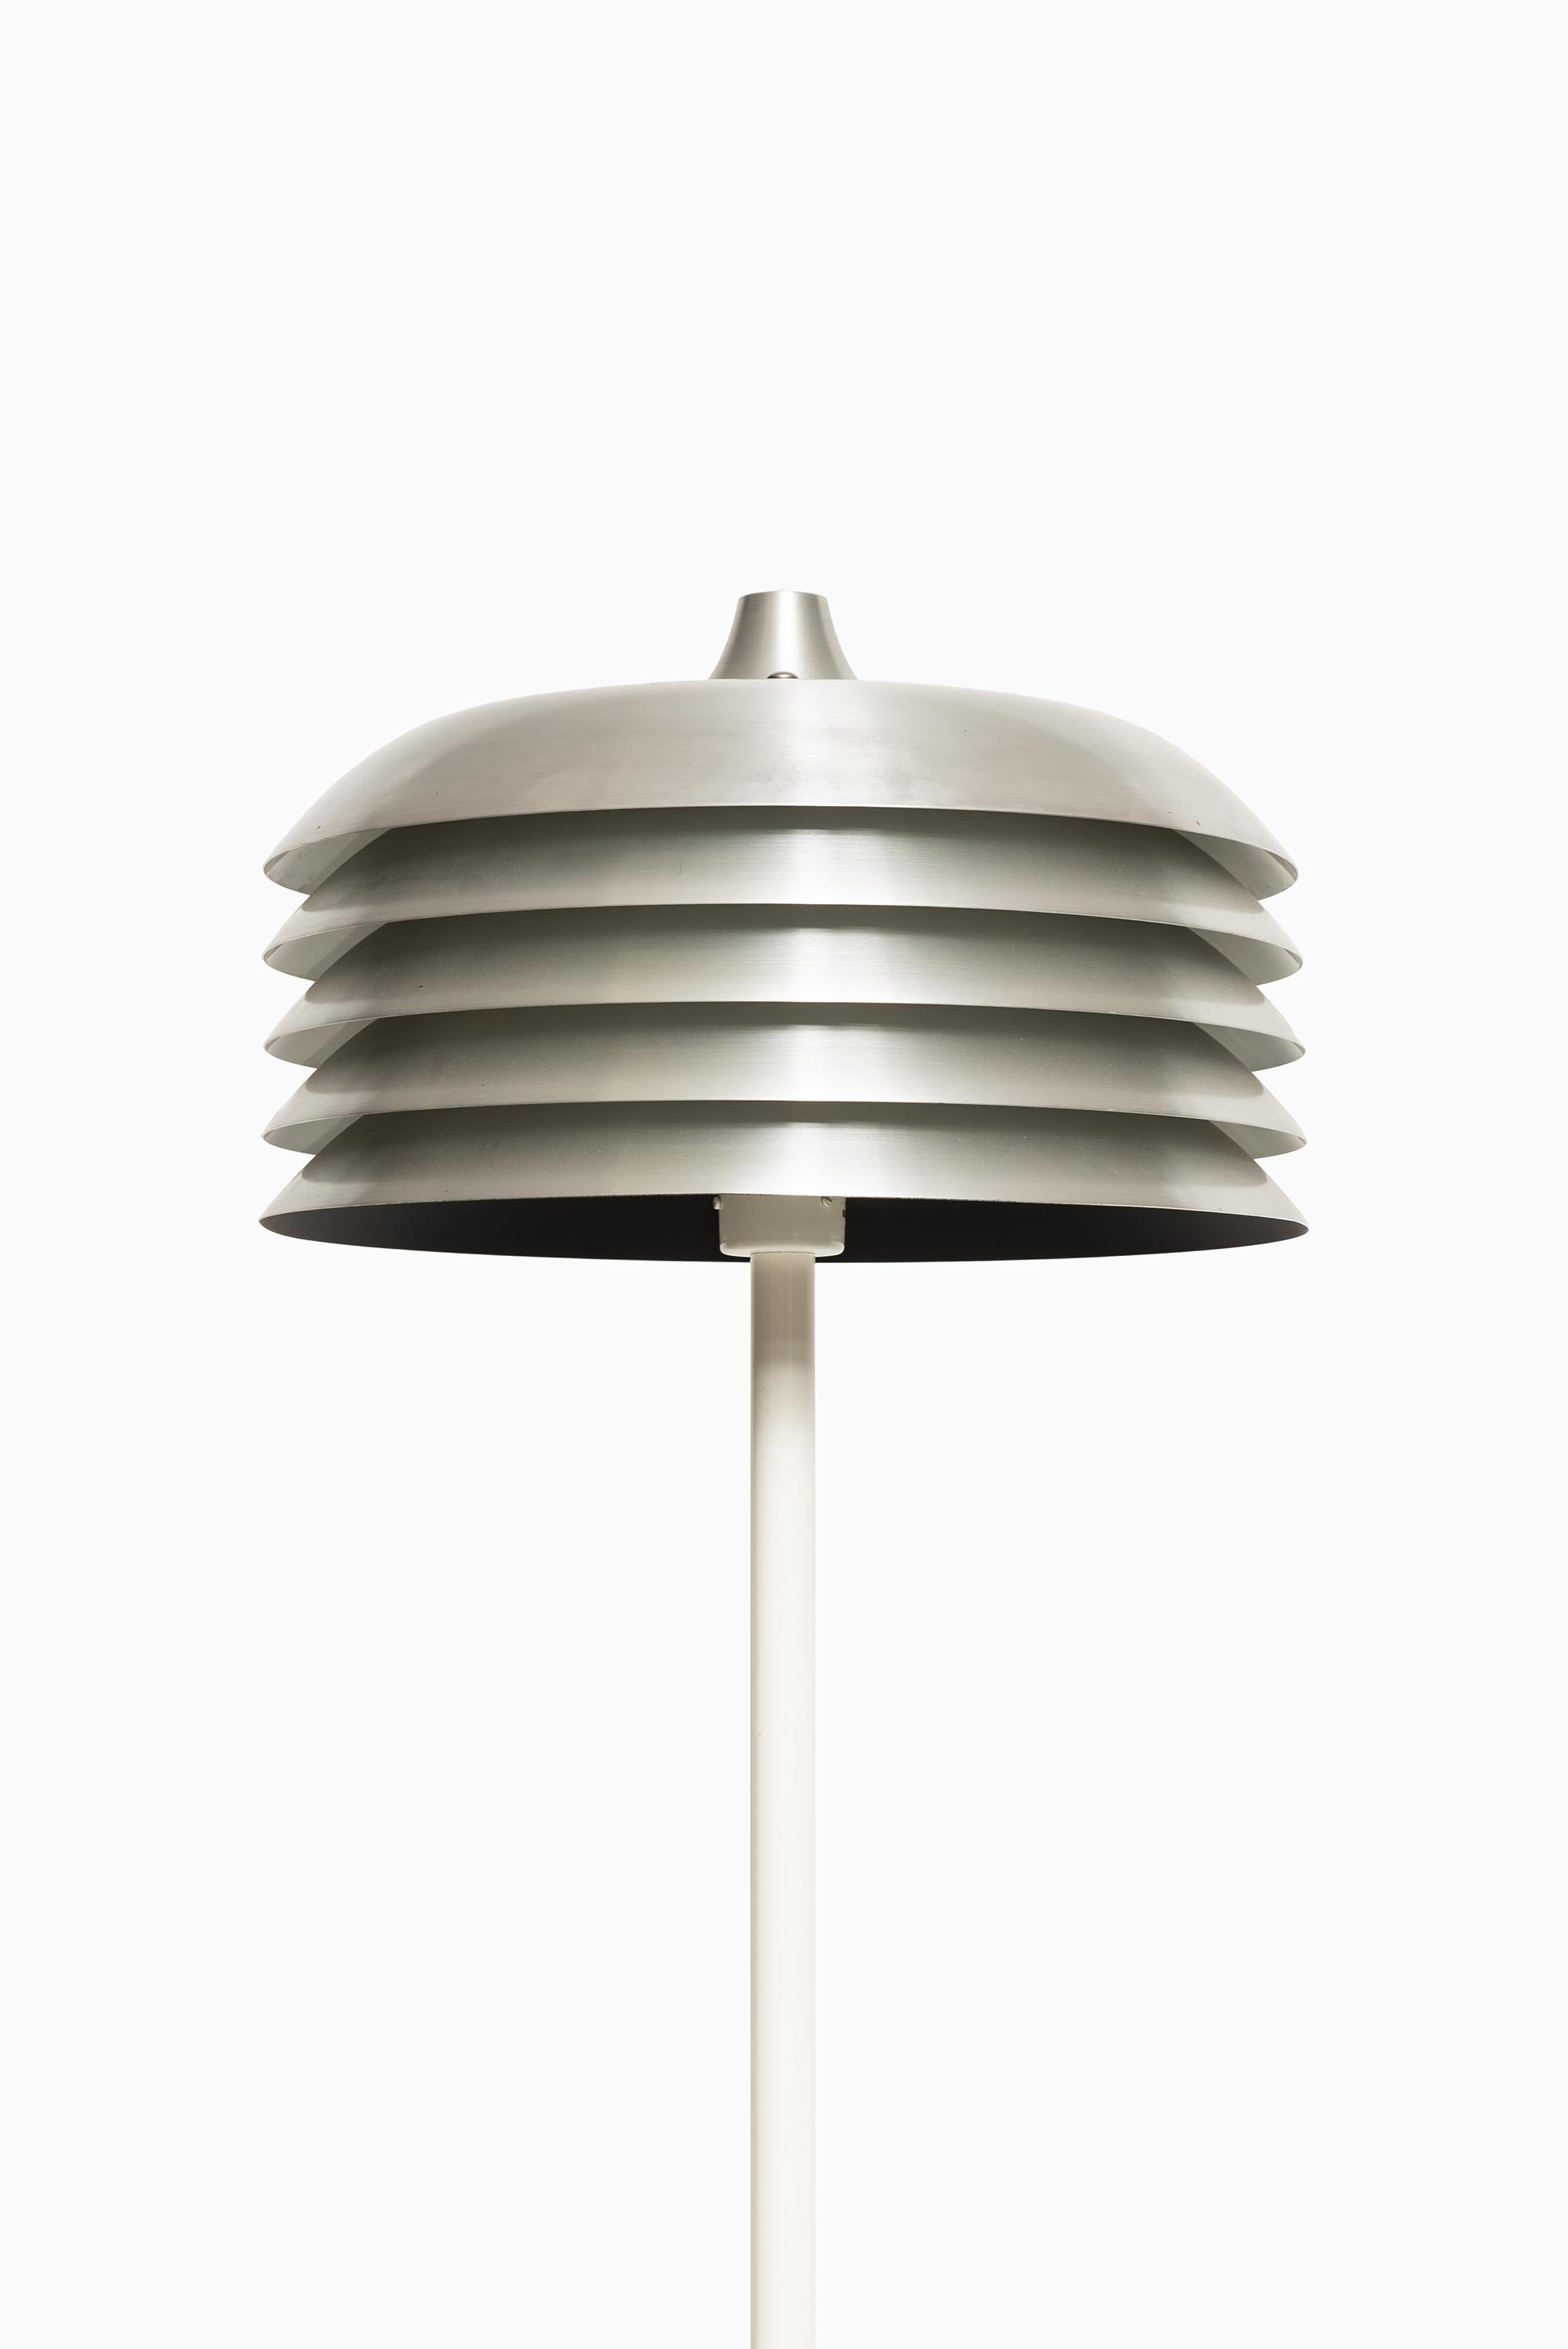 Rare lampadaire modèle G-178 conçu par Hans-Agne Jakobsson. Produit par Hans-Agne Jakobsson AB à Markaryd, Suède.